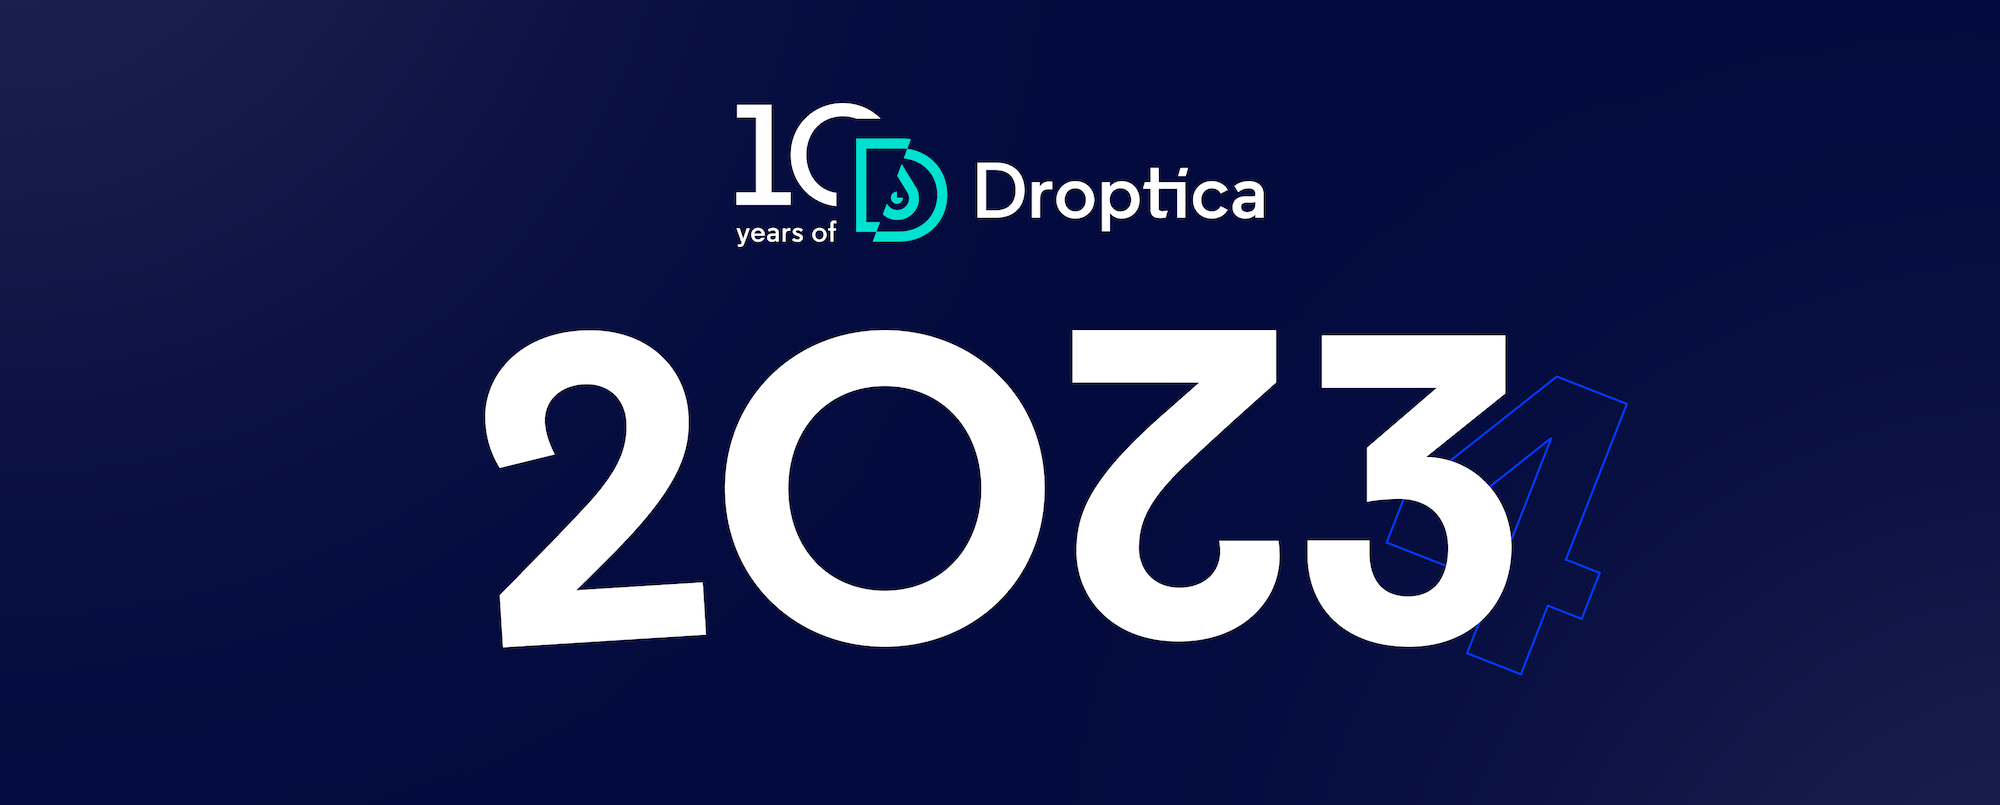 W podsumowaniu 2023 roku dla Droptica wspominamy, co się działo i snujemy plany na przyszłość.